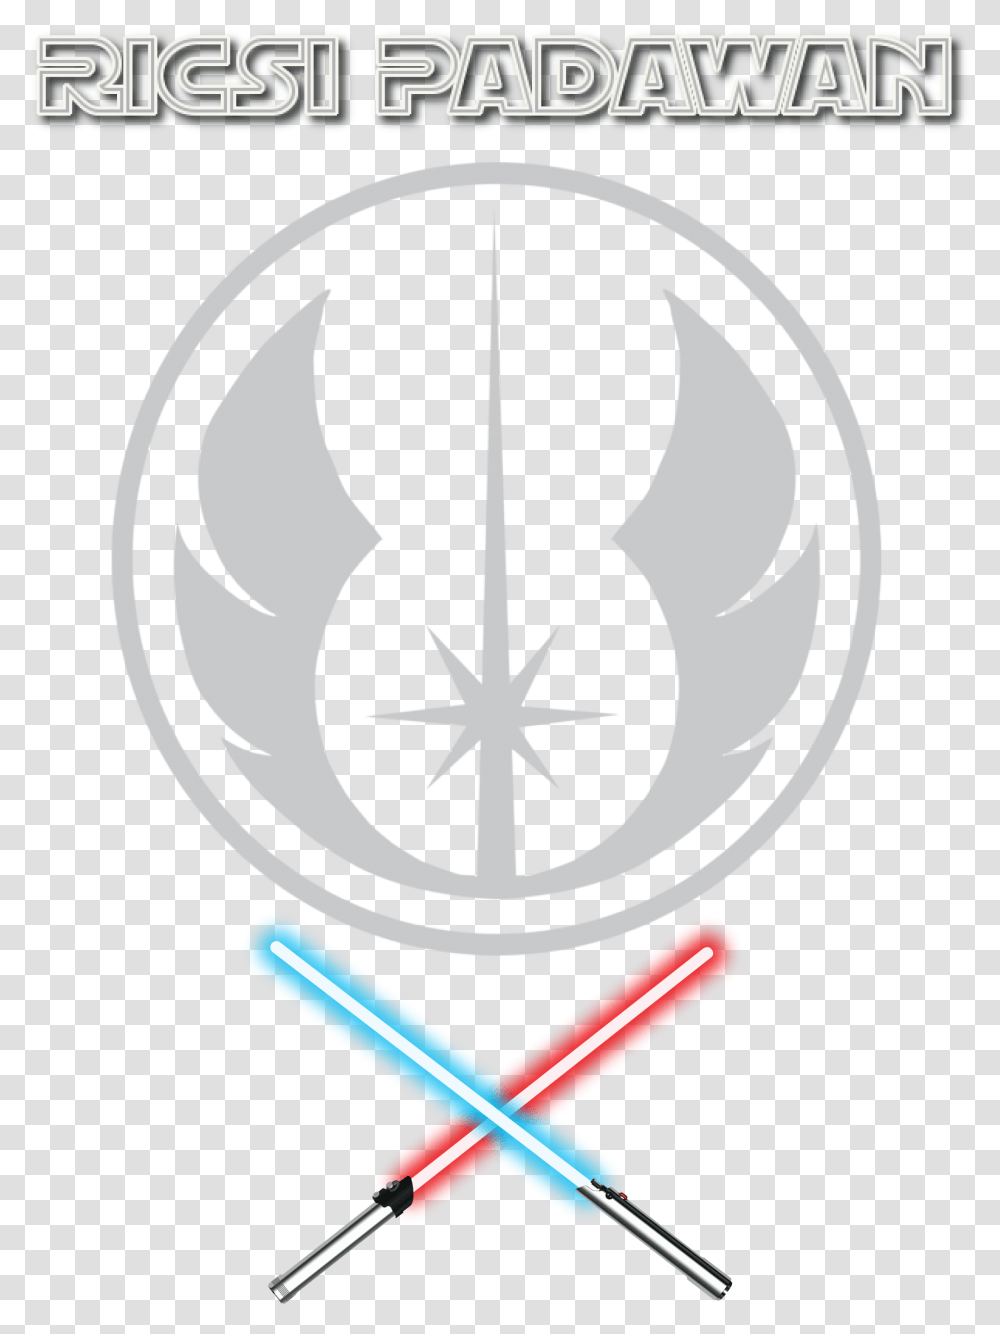 Jedi Download Jedi Order Symbol, Emblem, Logo, Trademark, Poster Transparent Png